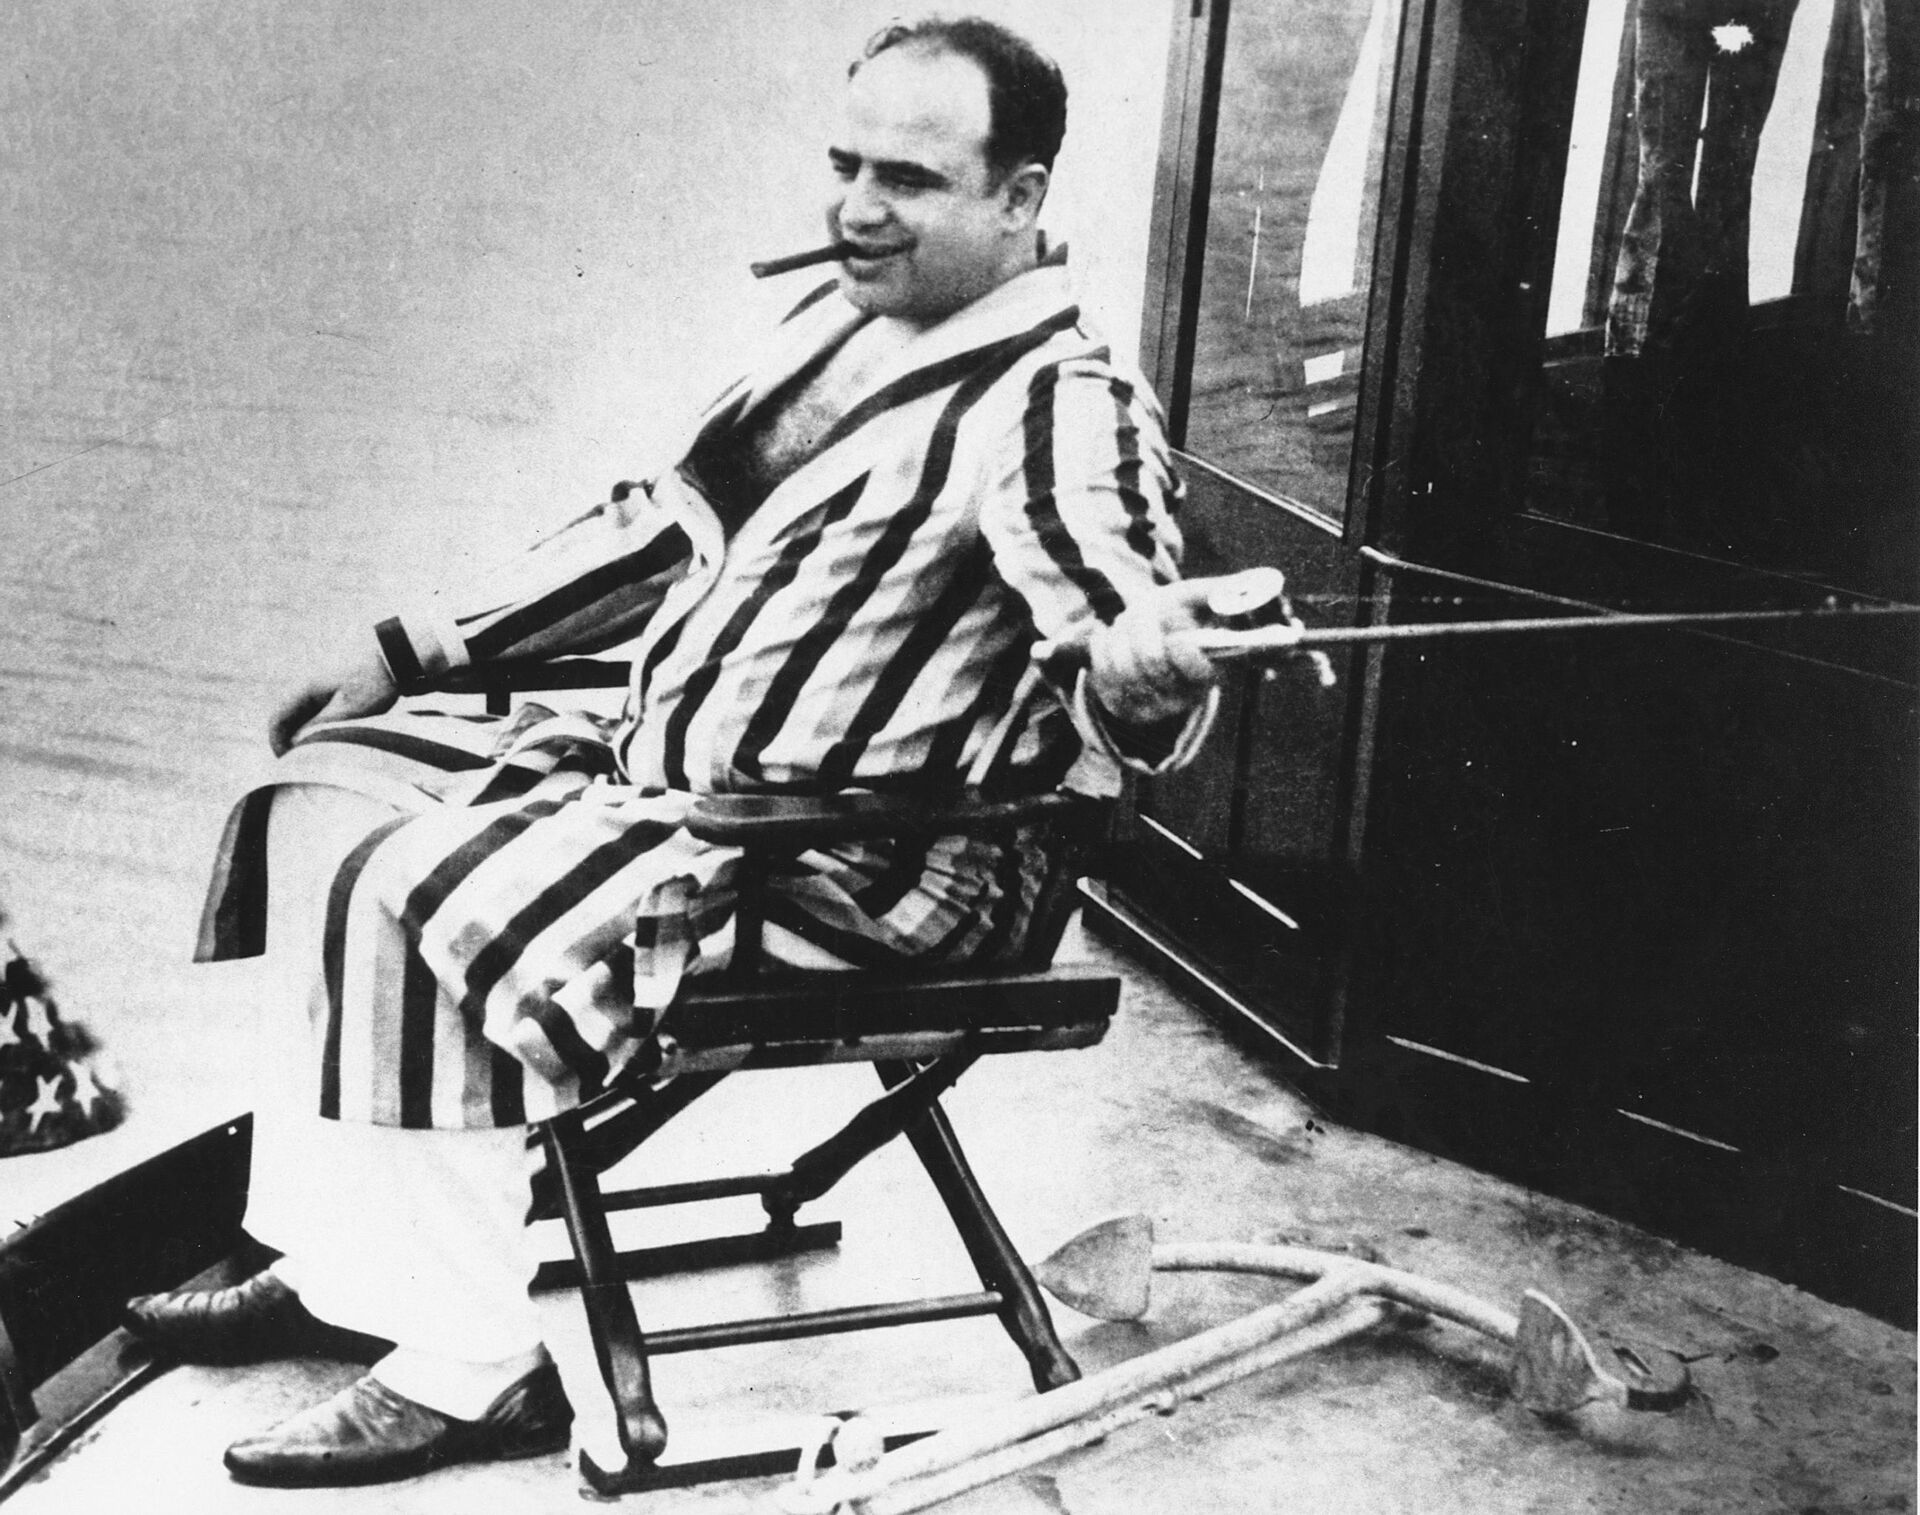 Fábrica clandestina de bebidas alcoólicas vinculada a Al Capone é descoberta em floresta dos EUA - Sputnik Brasil, 1920, 18.02.2021